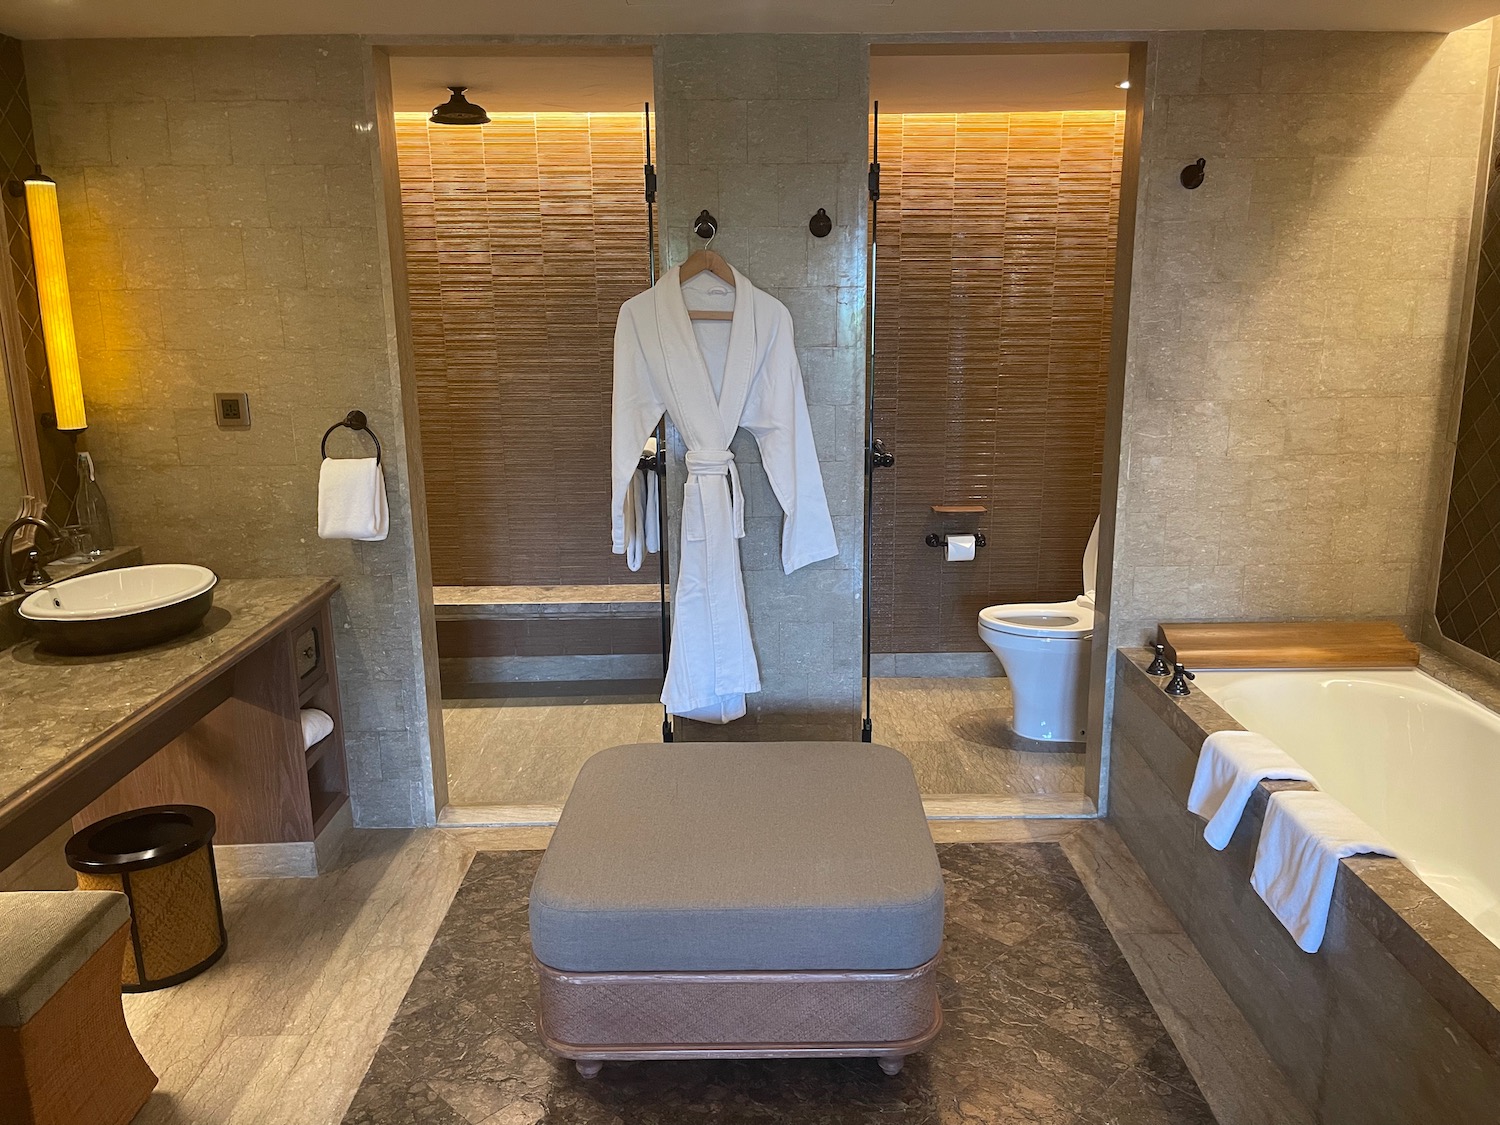 a bathroom with a bathrobe and tub